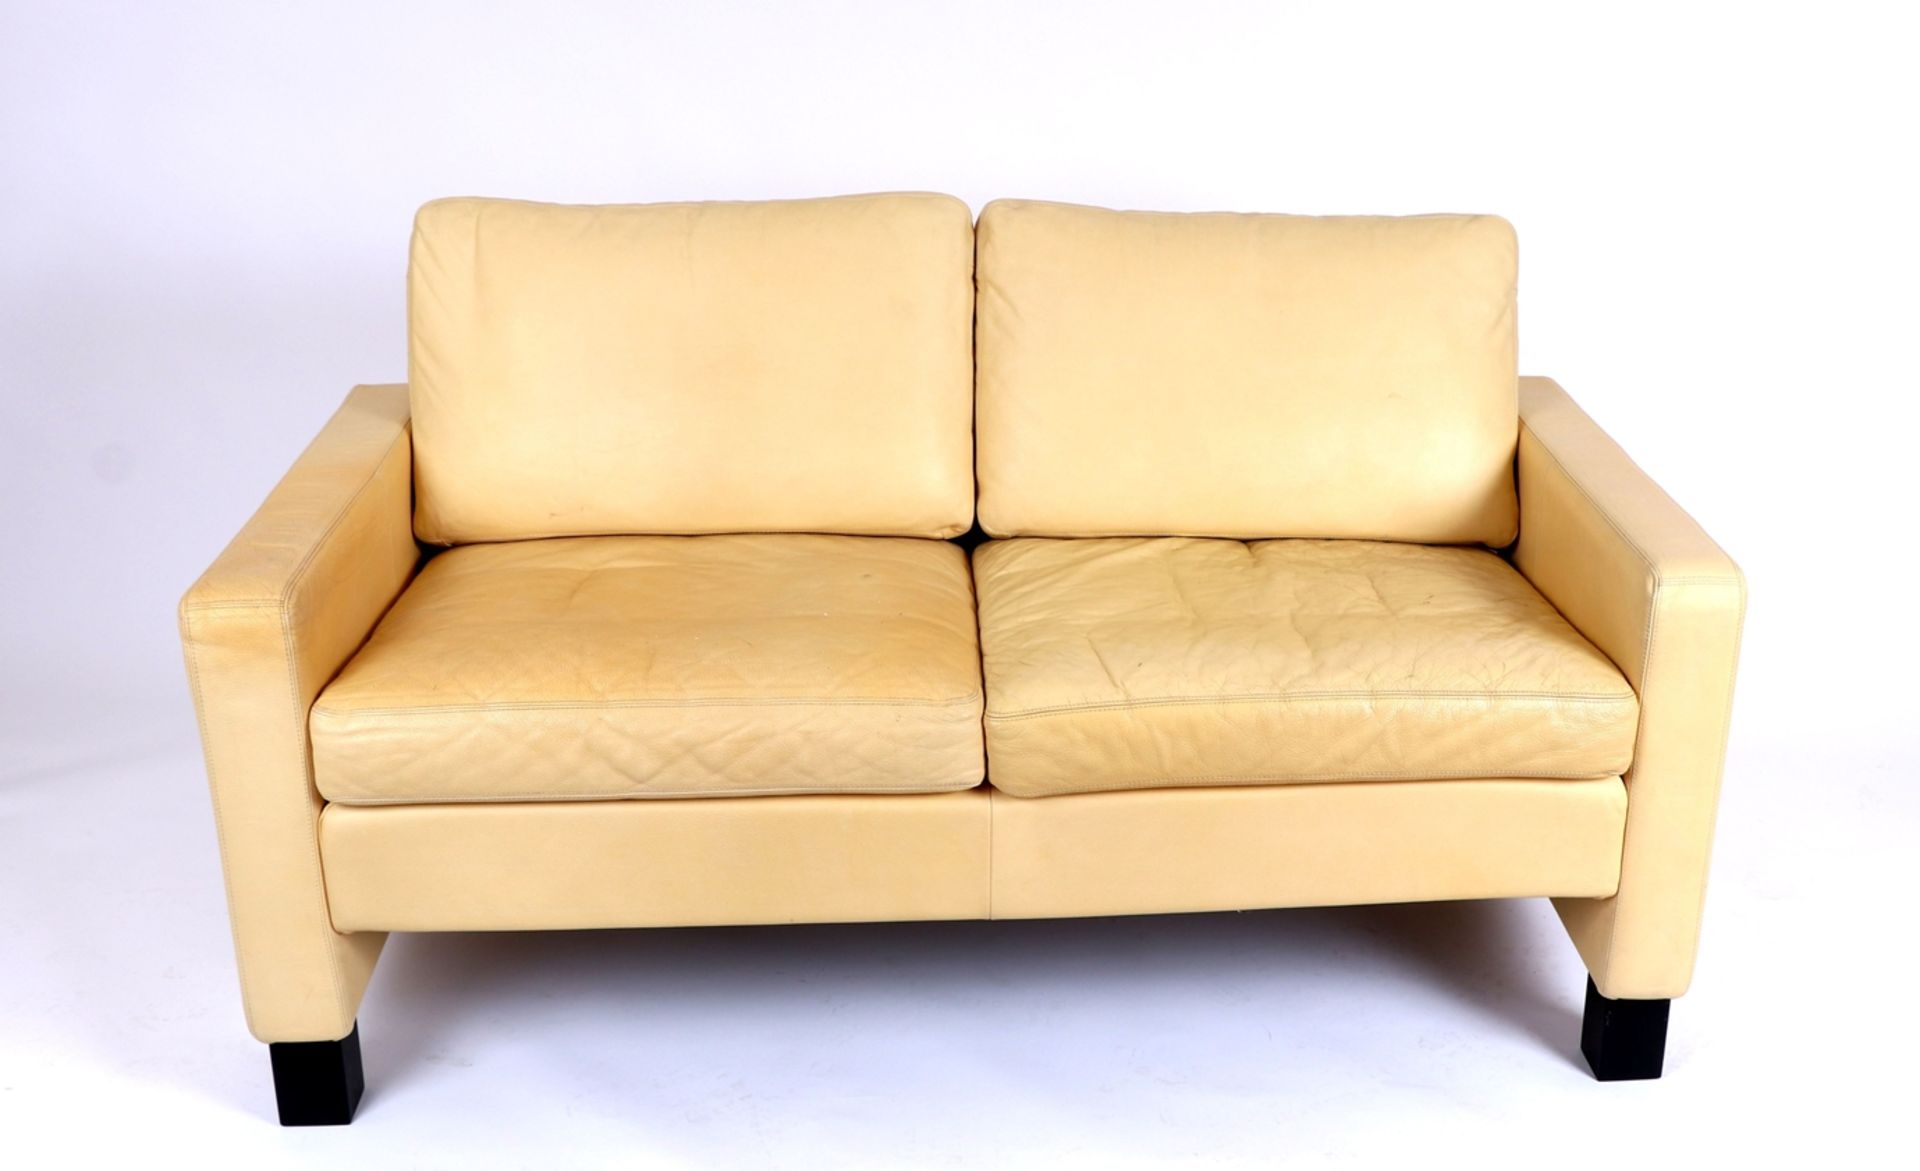 COR Conseta-Vintage Ledersofa- Bauhausstil-2-Sitzer, gelbes genarbtes Leder. Gebrauchsspuren, auf